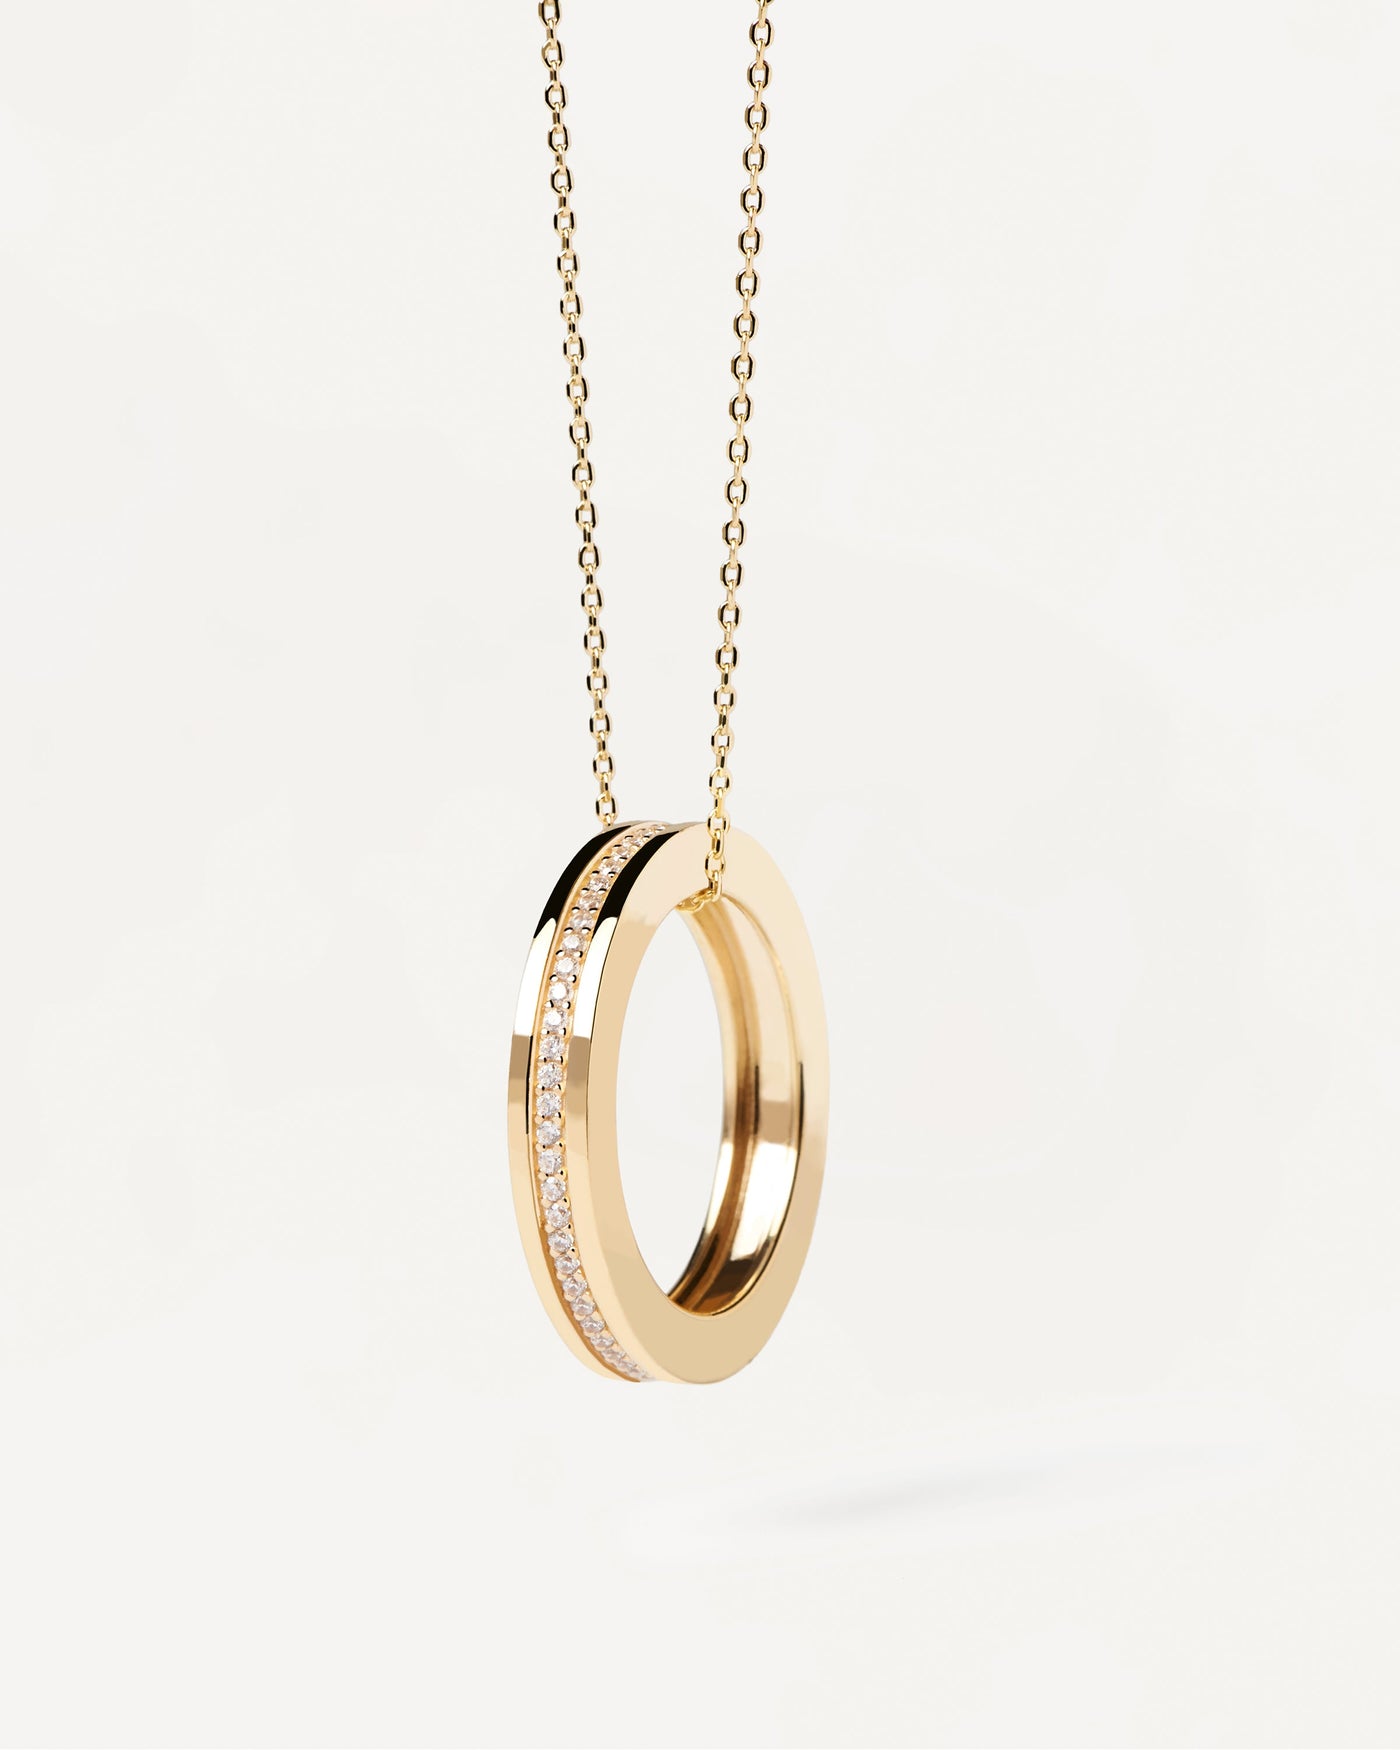 Collar Infinity. Collar de plata bañado en oro con anillo de circonitas colgante. Consigue las últimas novedades de PDPAOLA. Haz tu pedido de forma segura y obtén este Best Seller.